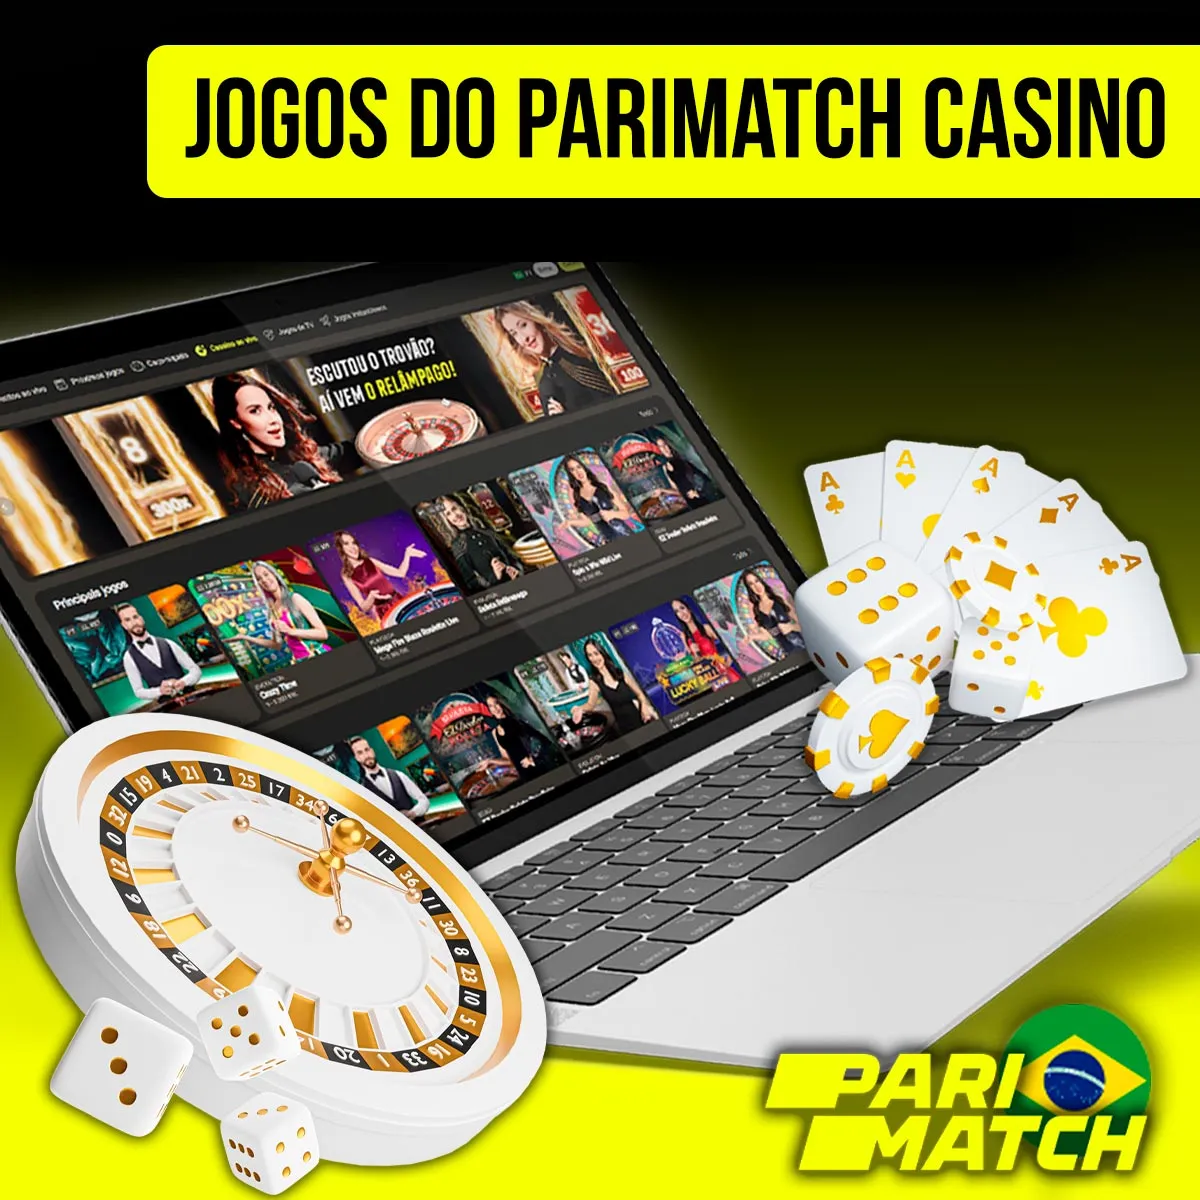 Jogos de casino Parimatch no mercado brasileiro